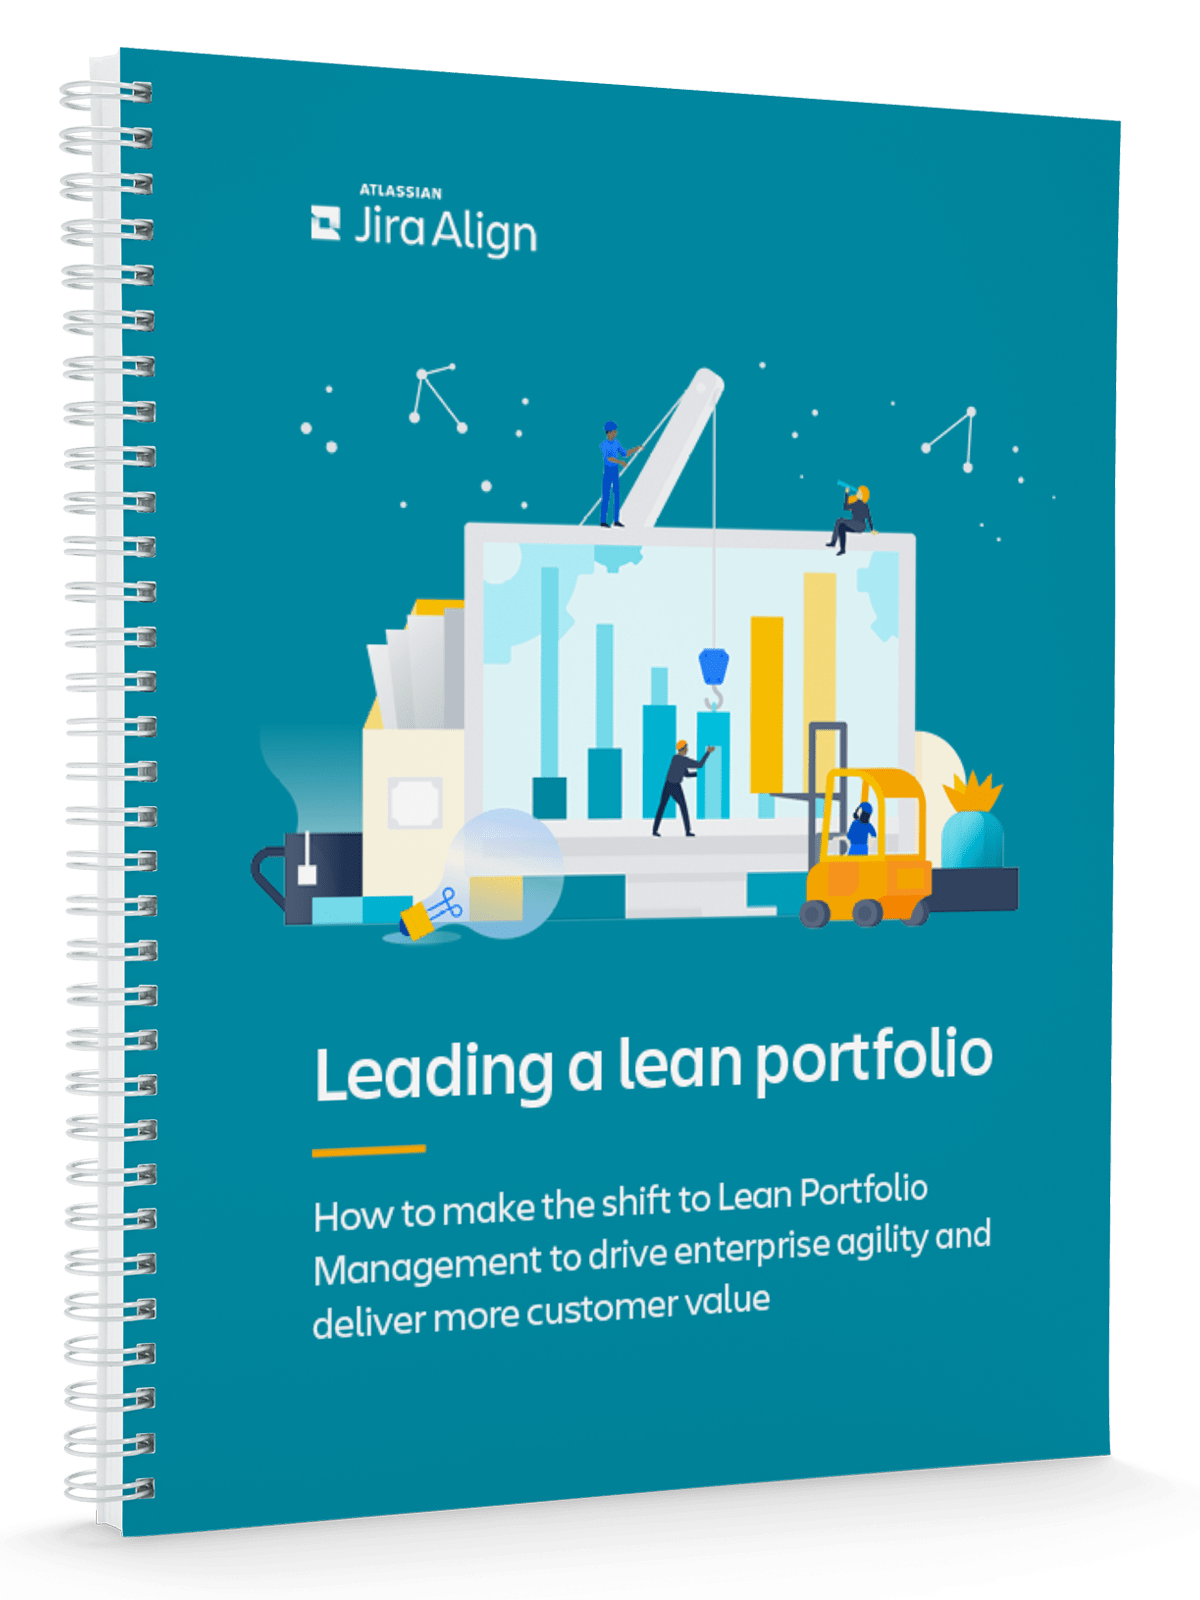 Copertina dell'ebook Leading a lean portfolio (Creare un portfolio Lean)